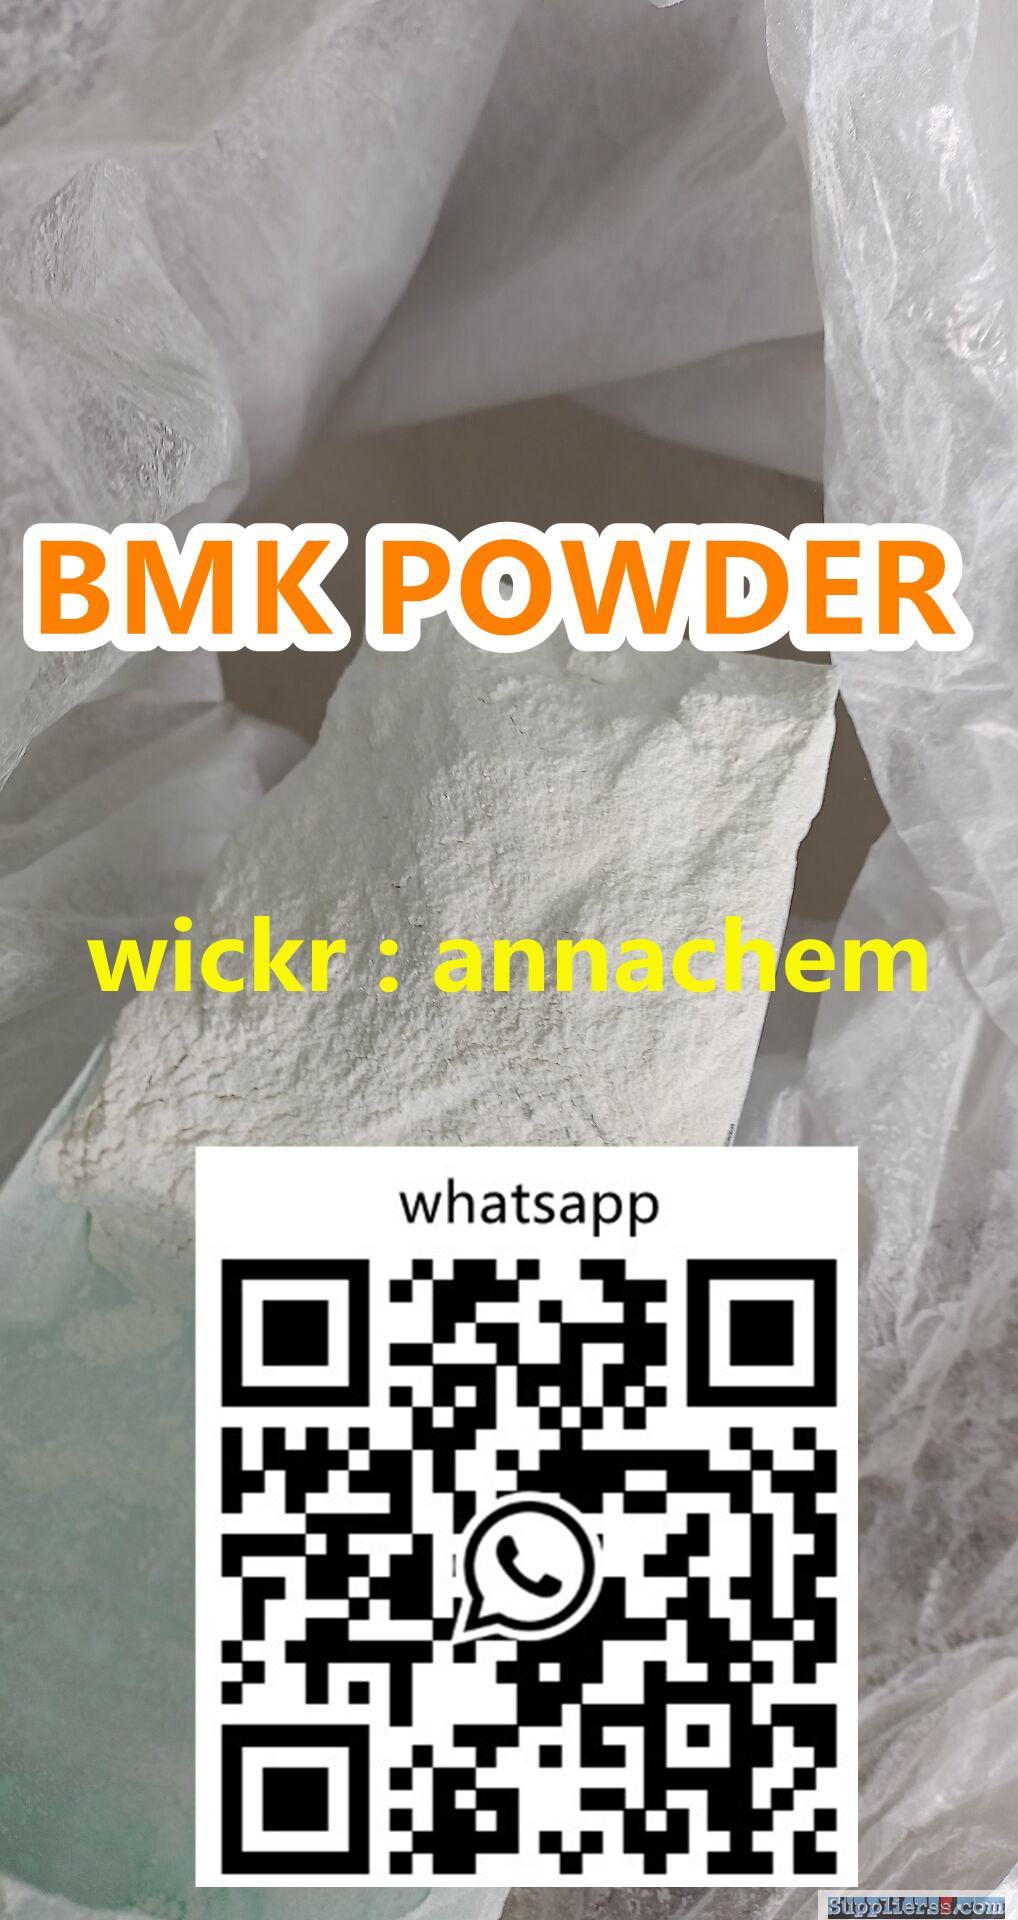 BMK powder bmk glycidate acidCAS 5449-12-7/5413-05-8/20320-59-6/10250-27-8 wickr:annachem